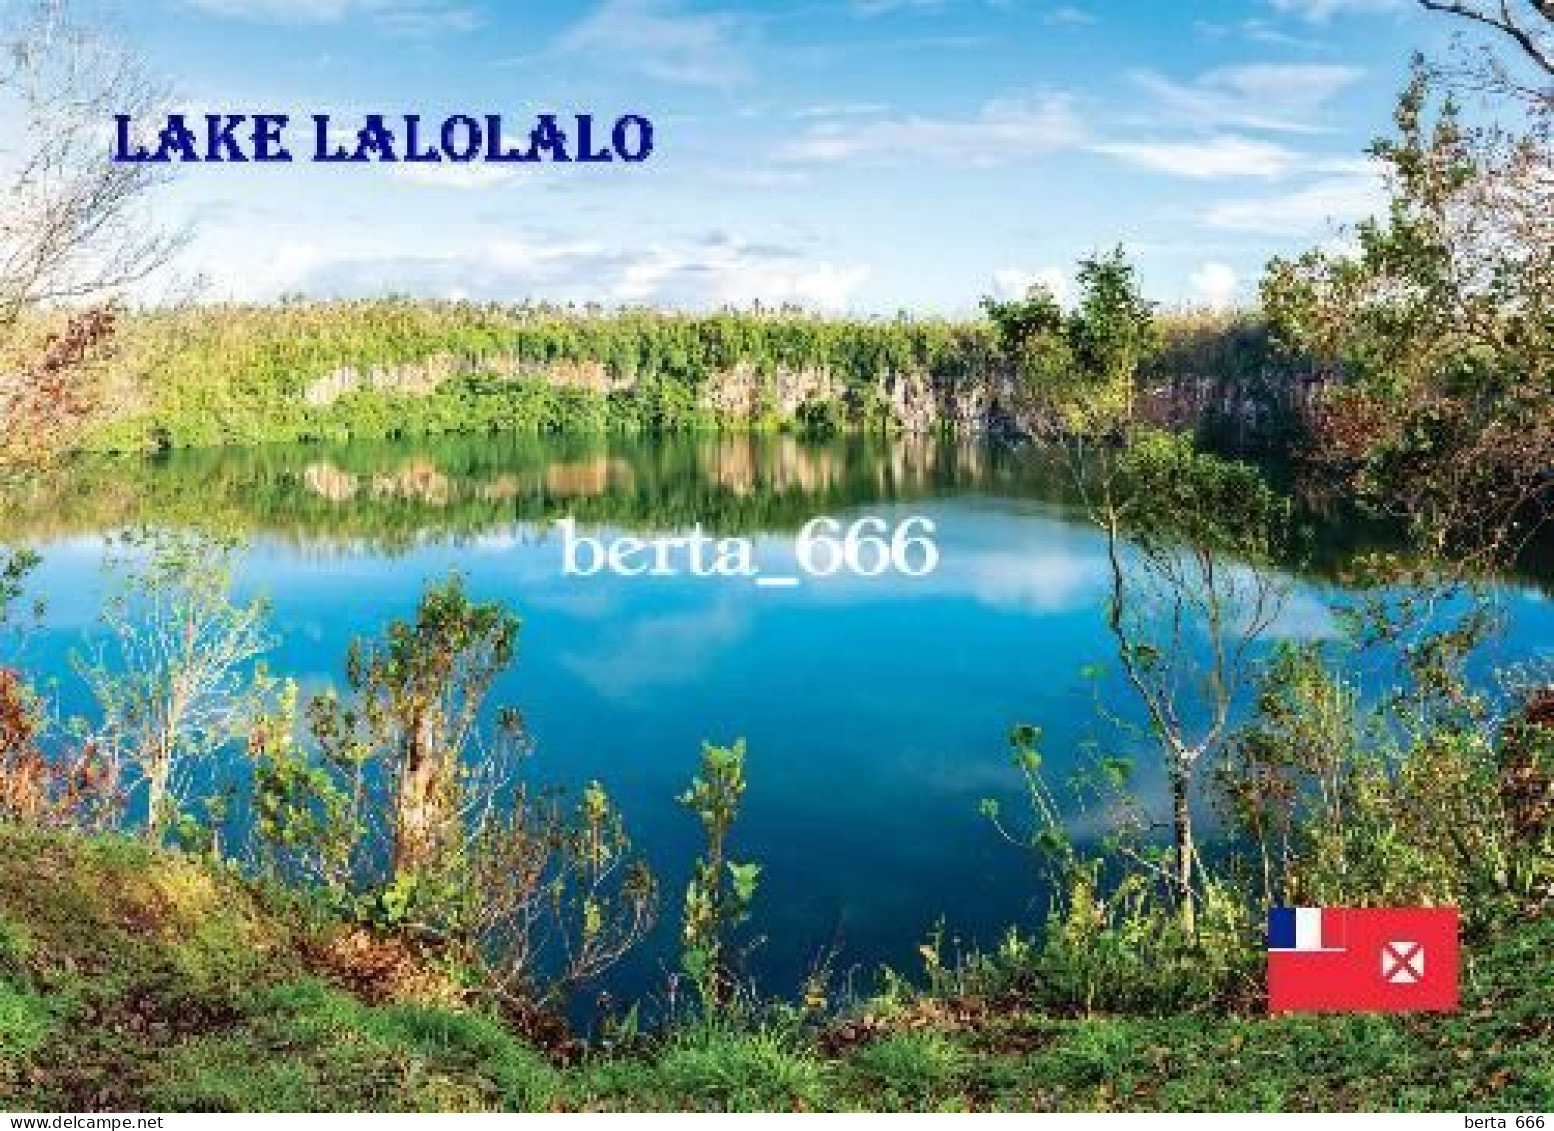 Wallis And Futuna Lake Lalolalo New Postcard - Wallis Y Futuna